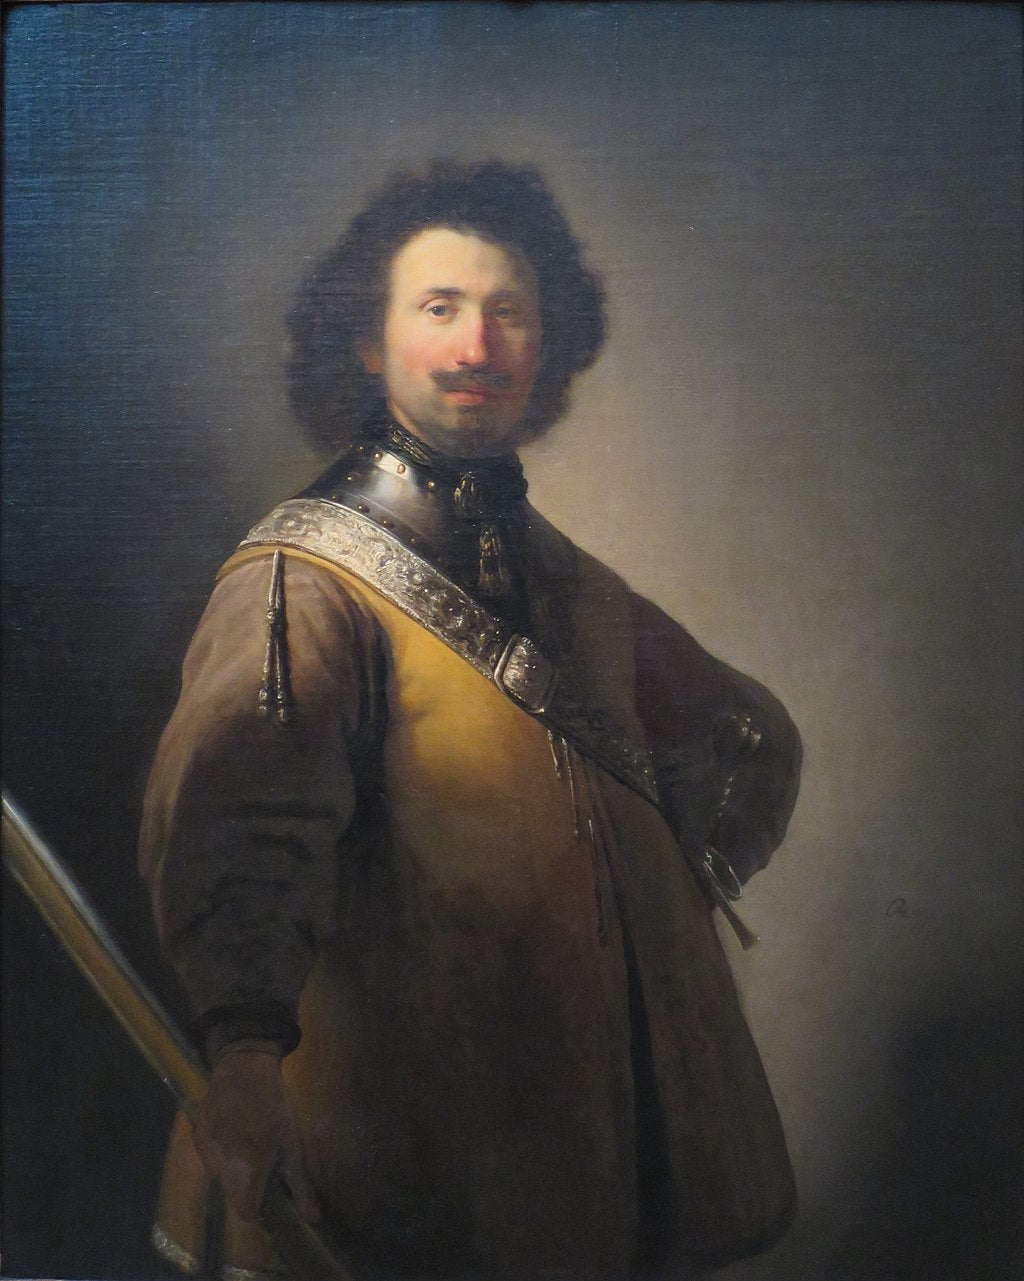 Portrait of Joris de Caullery Painting by Rembrandt Oil on Canvas Reproduction by Blue Surf Art